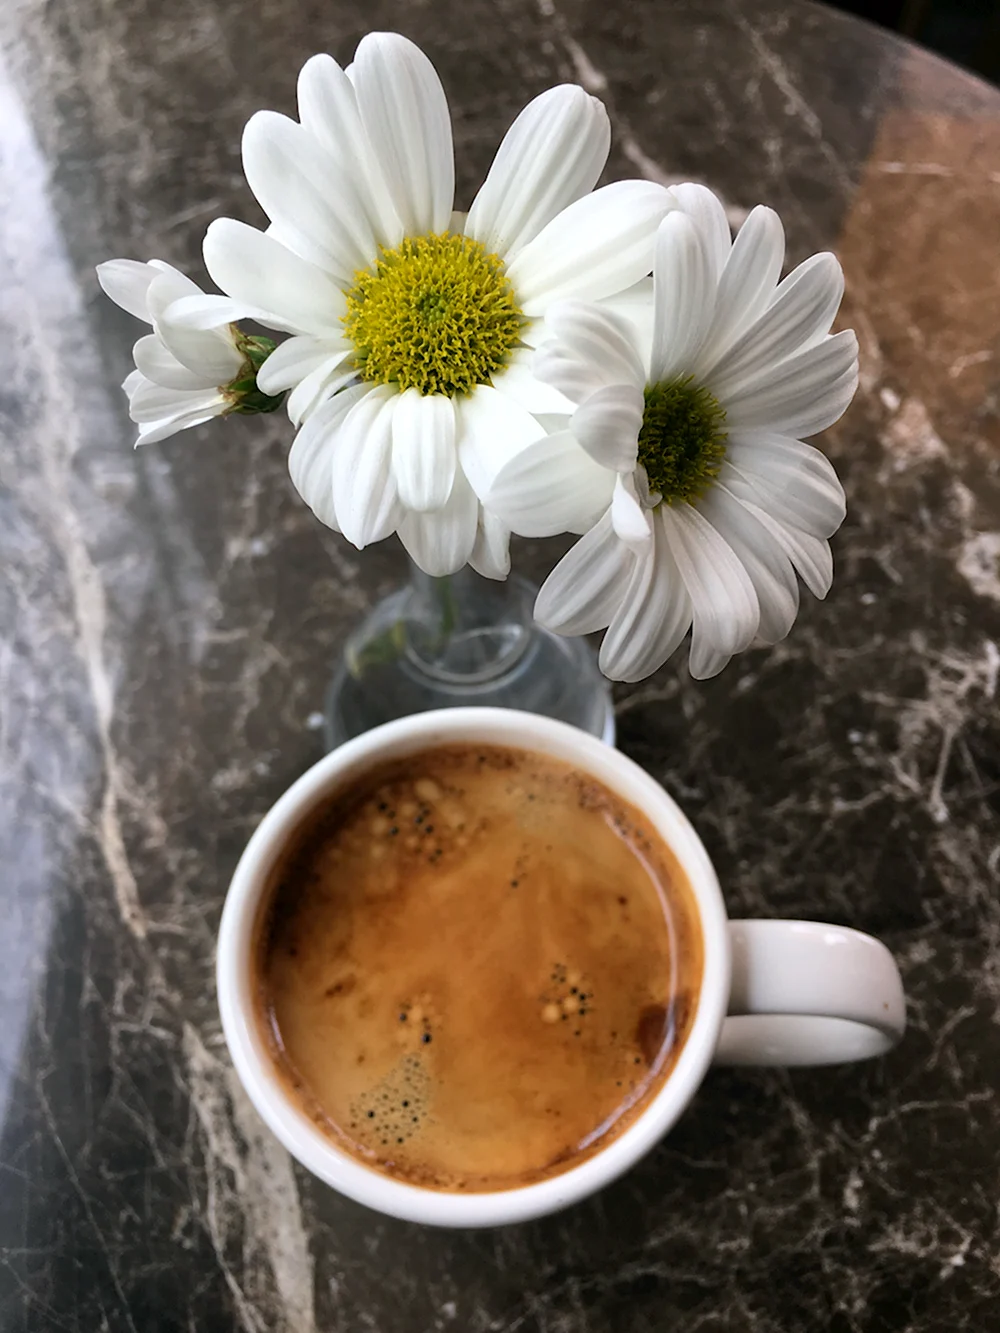 Цветы в понедельник и кофе